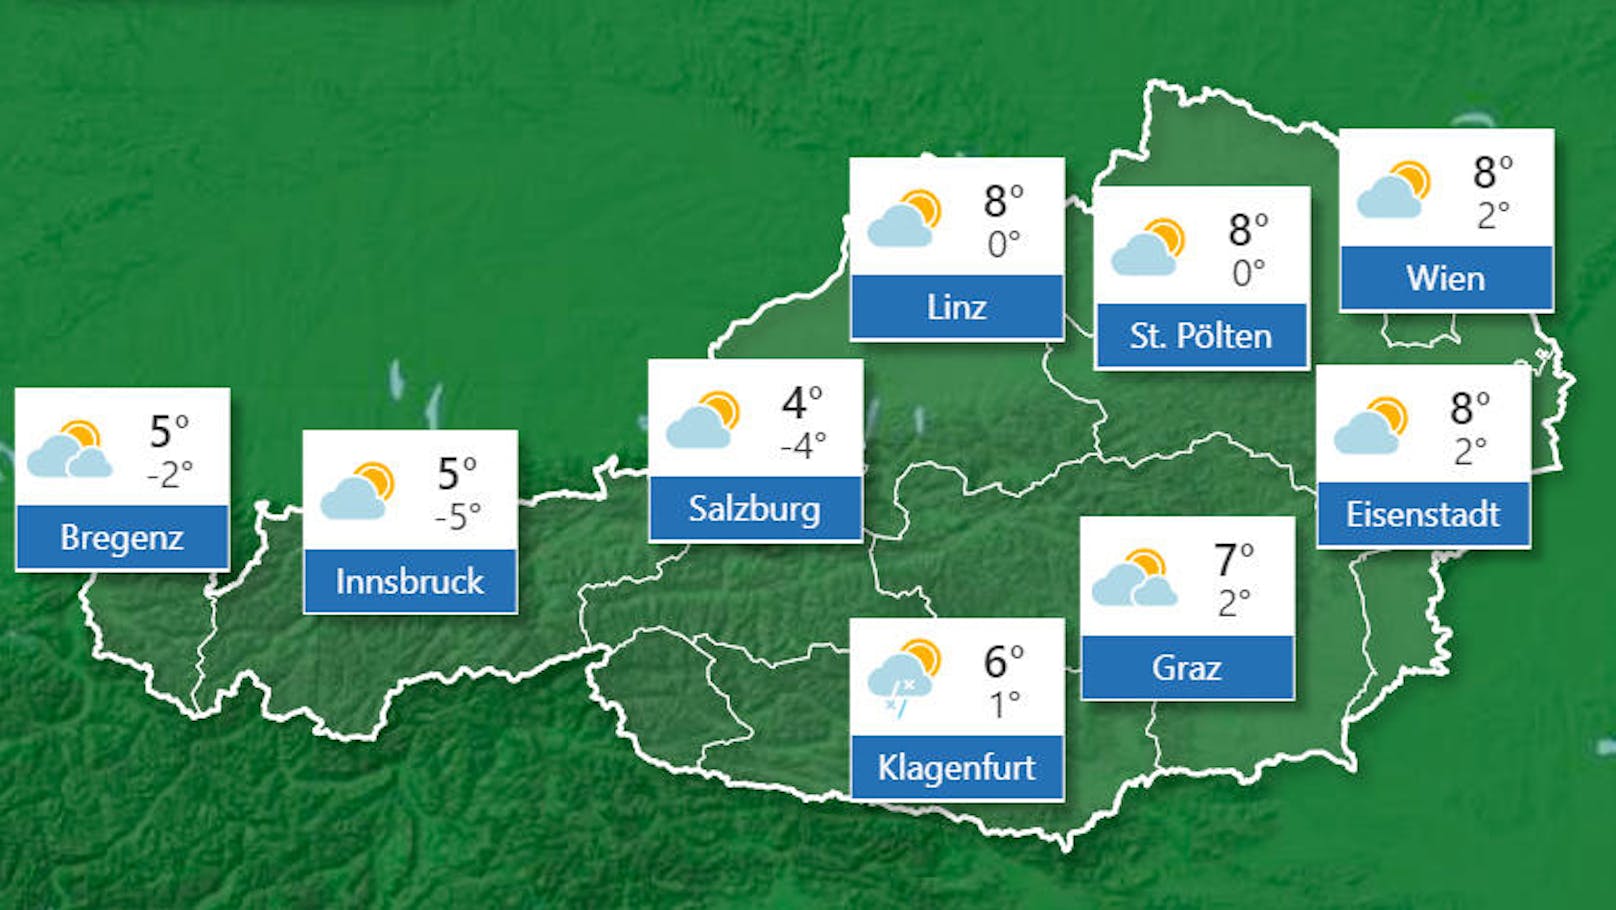 <b>Donnerstag, 14. November 2019</b>: Am Donnerstag stellt sich deutlich ruhigeres Herbstwetter ein. Zunächst halten sich im Flachland sowie in manchen Tälern Nebel- und Hochnebelfelder, diese machen aber meist im Laufe des Tages der Sonne Platz. Dichte Wolken sind dagegen vom Tiroler Alpenhauptkamm über Osttirol und Kärnten bis in die Weststeiermark anzutreffen, es bleibt aber auch hier meist trocken. Im Osten kommt mäßiger Südostwind auf, im Bergland wird es ab Mittag allmählich föhnig. Die Höchstwerte: 2 bis 8 Grad.